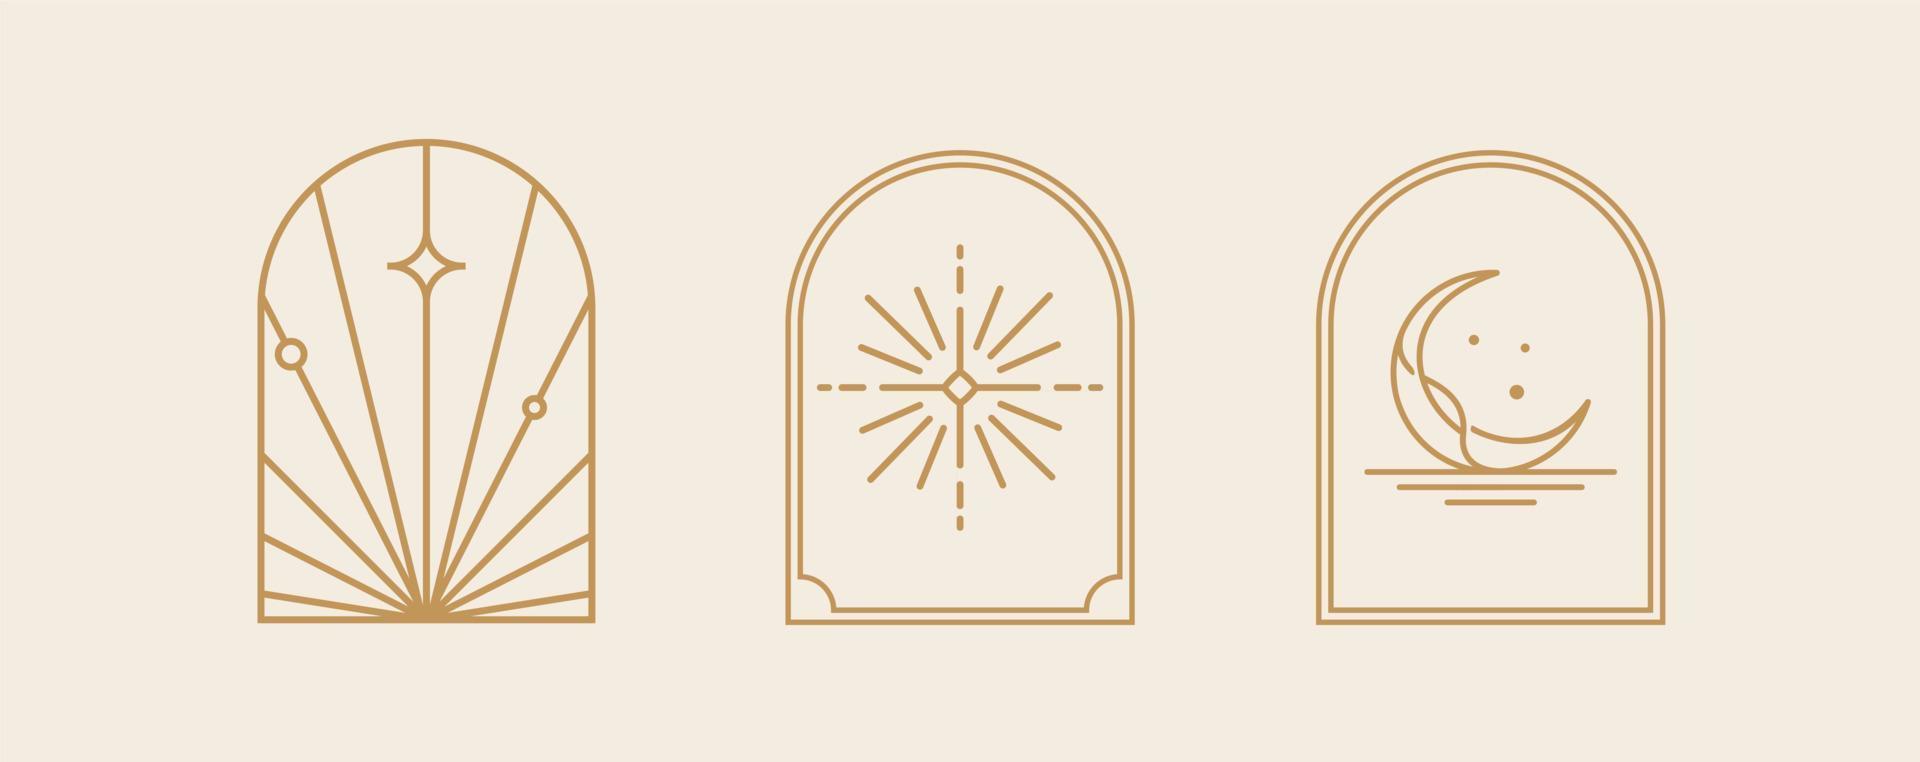 art de logo de ligne bohème, icônes et symboles, soleil et lune, éléments de conception abstraite géométrique de conception de fenêtre en arc pour la décoration vecteur